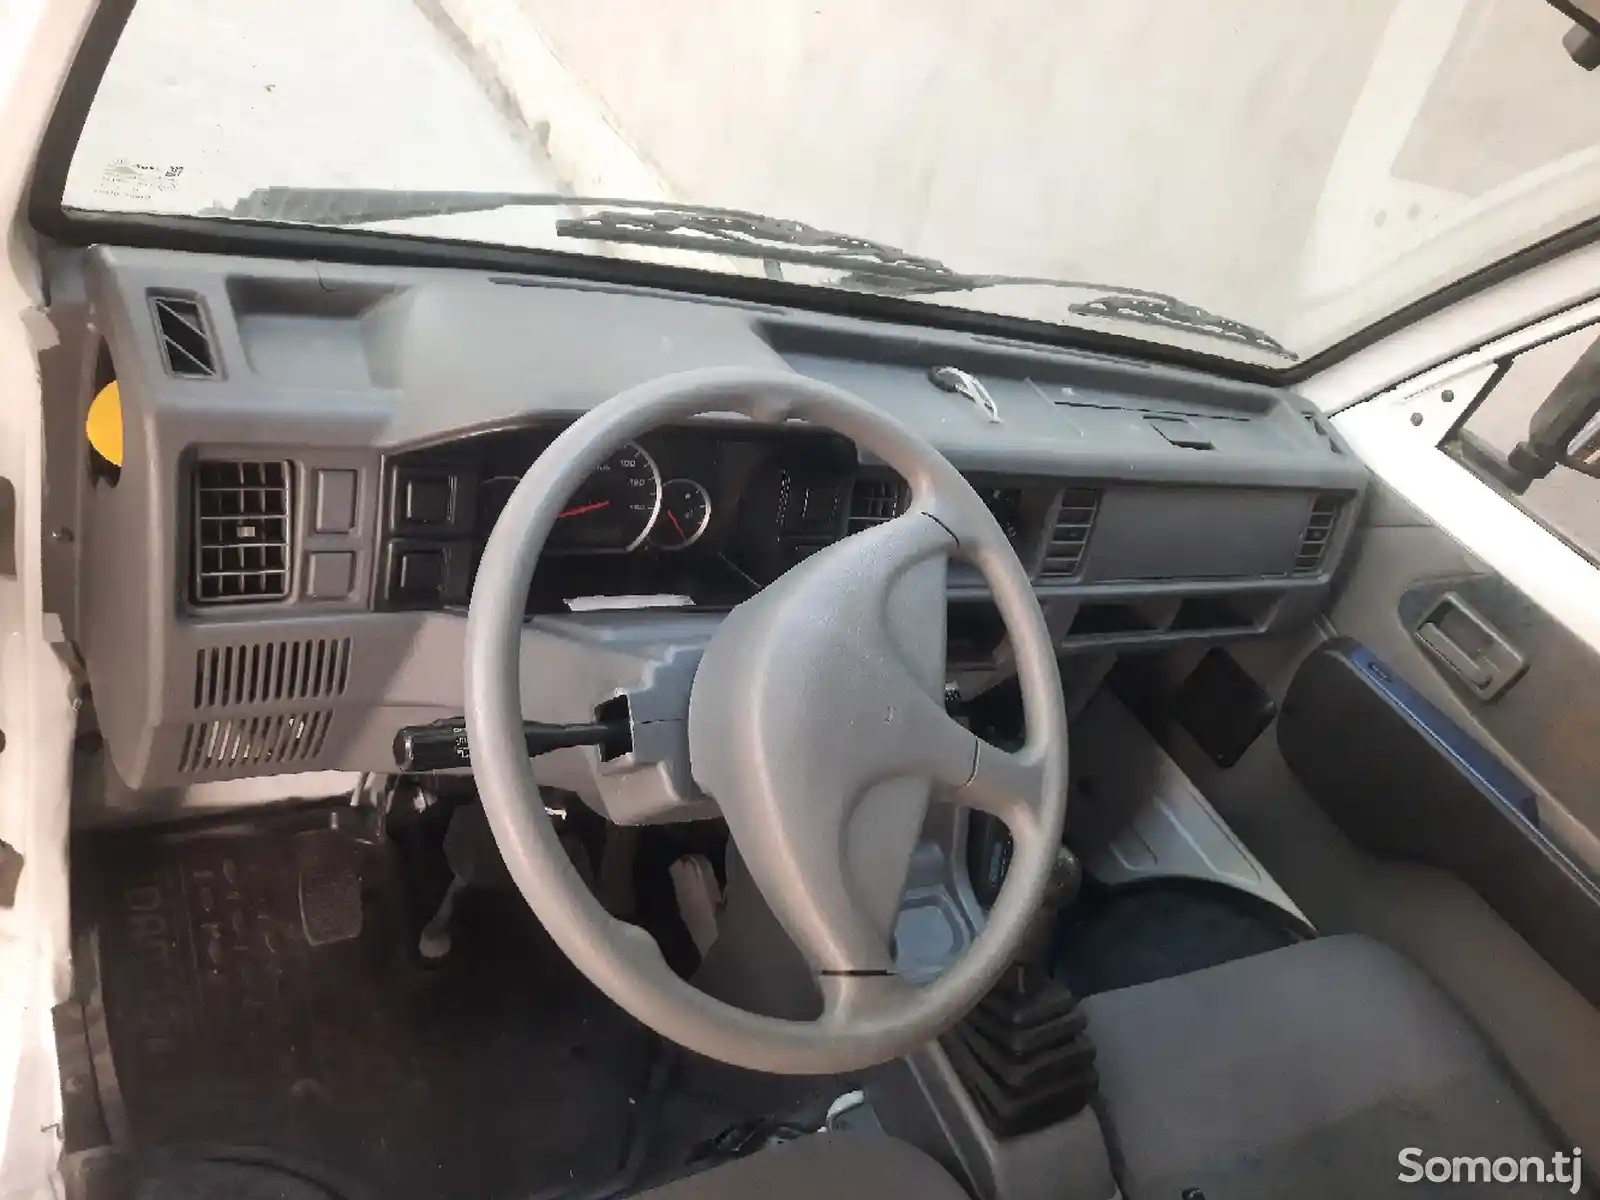 Бортовой автомобиль Daewoo Labo, 2014-9